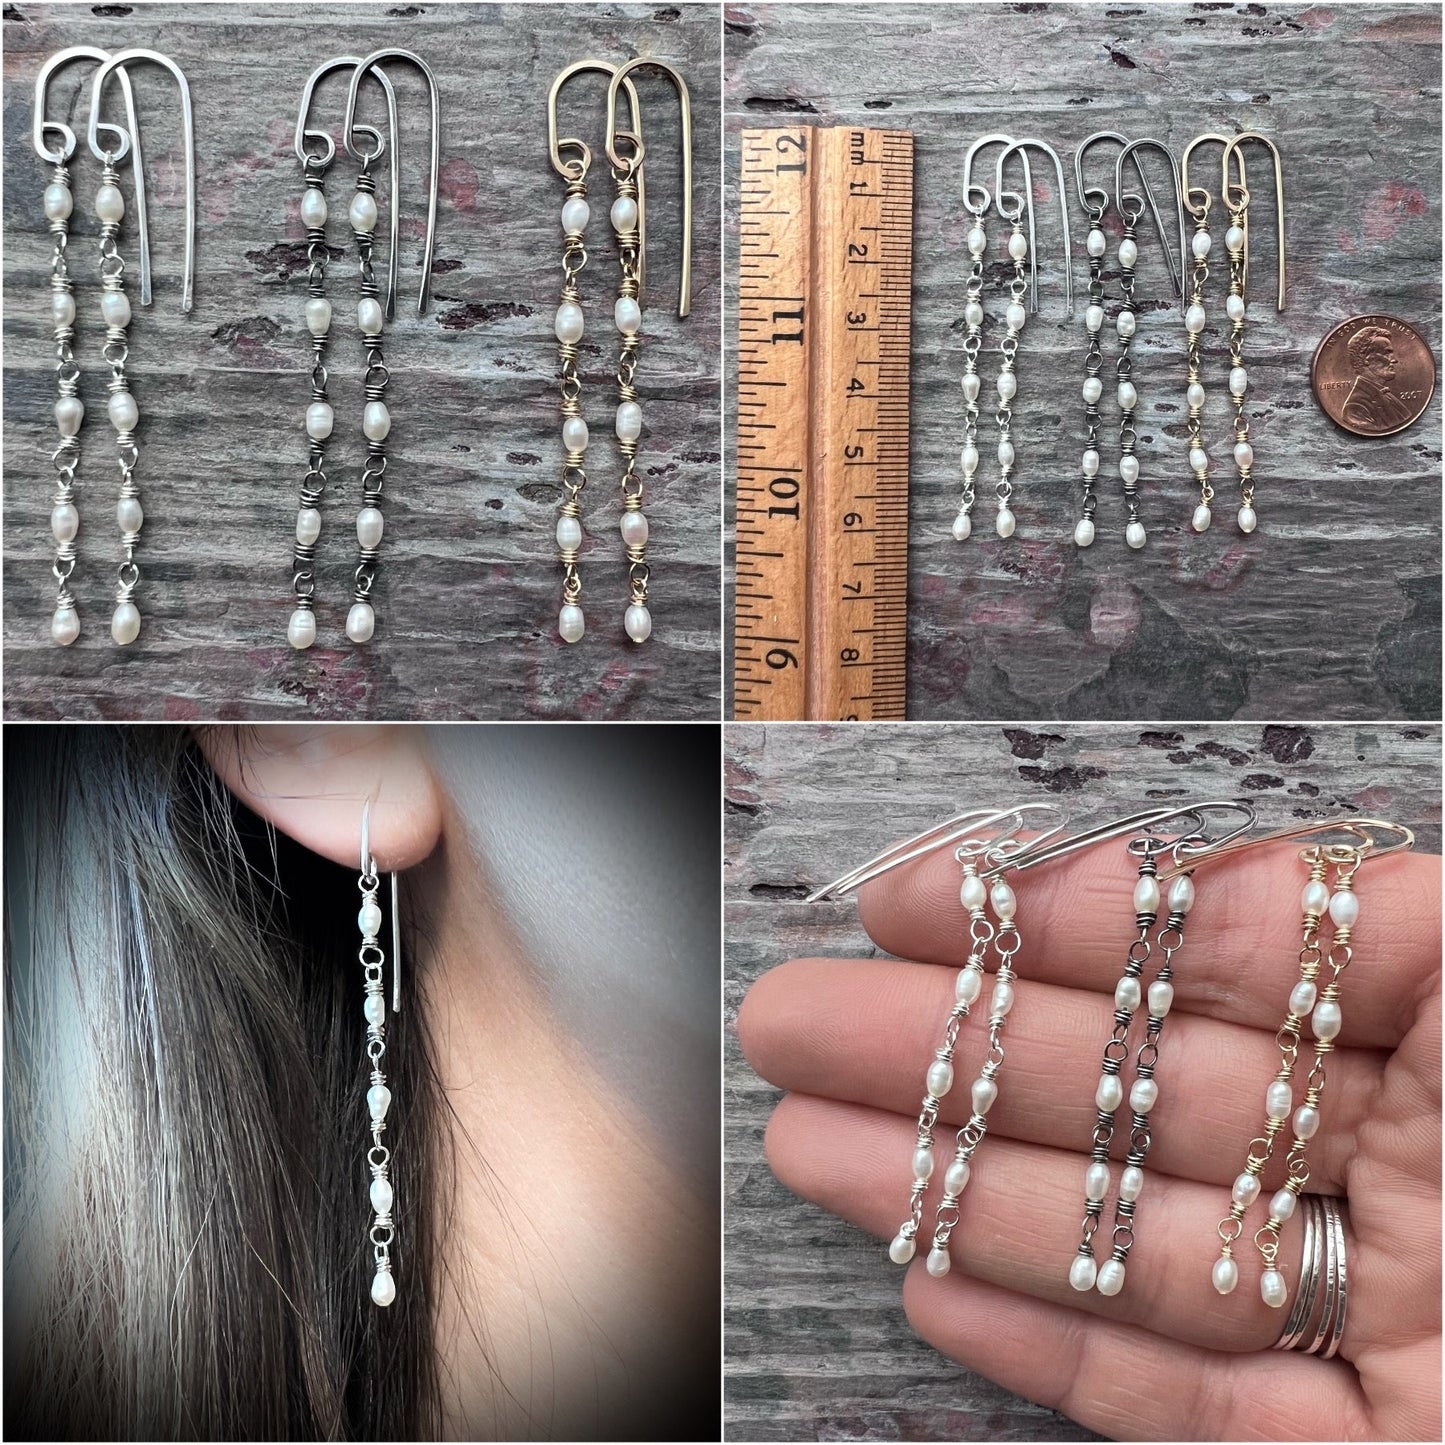 14k Goldfill Pearl Earrings | Long Genuine Pearl Gold or Silver Dangle Earrings